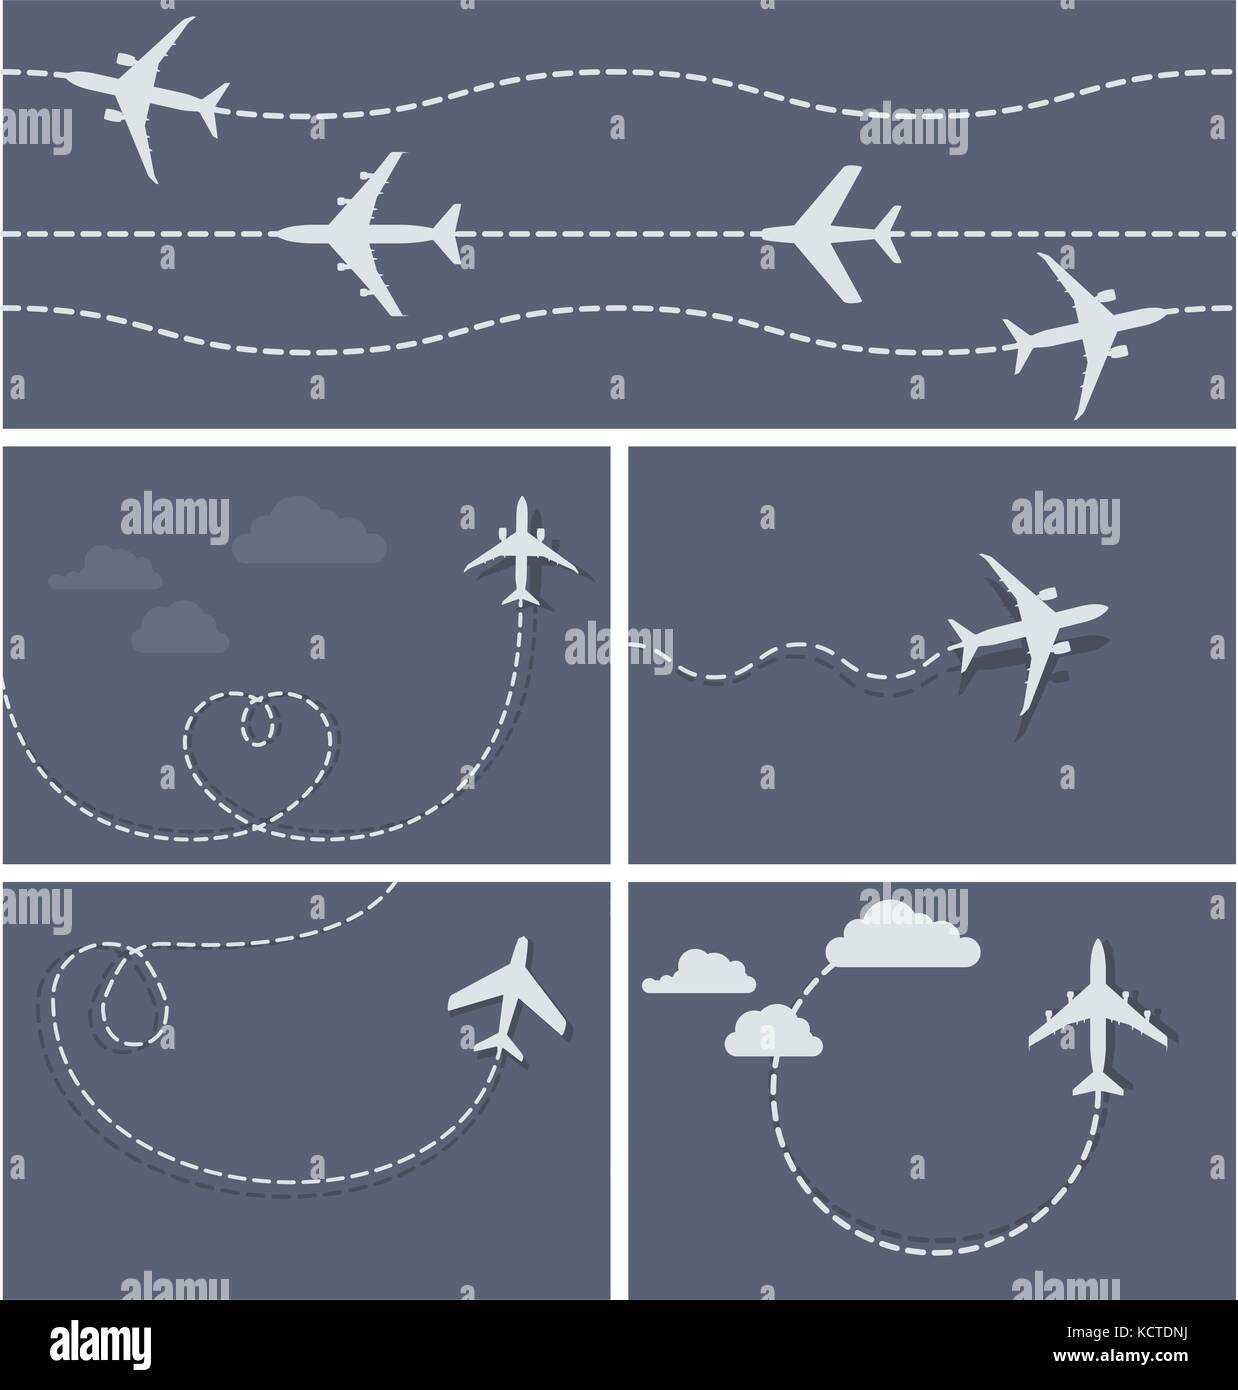 Vol - avion trace en pointillé de l'avion, et boucle en forme de coeur Illustration de Vecteur